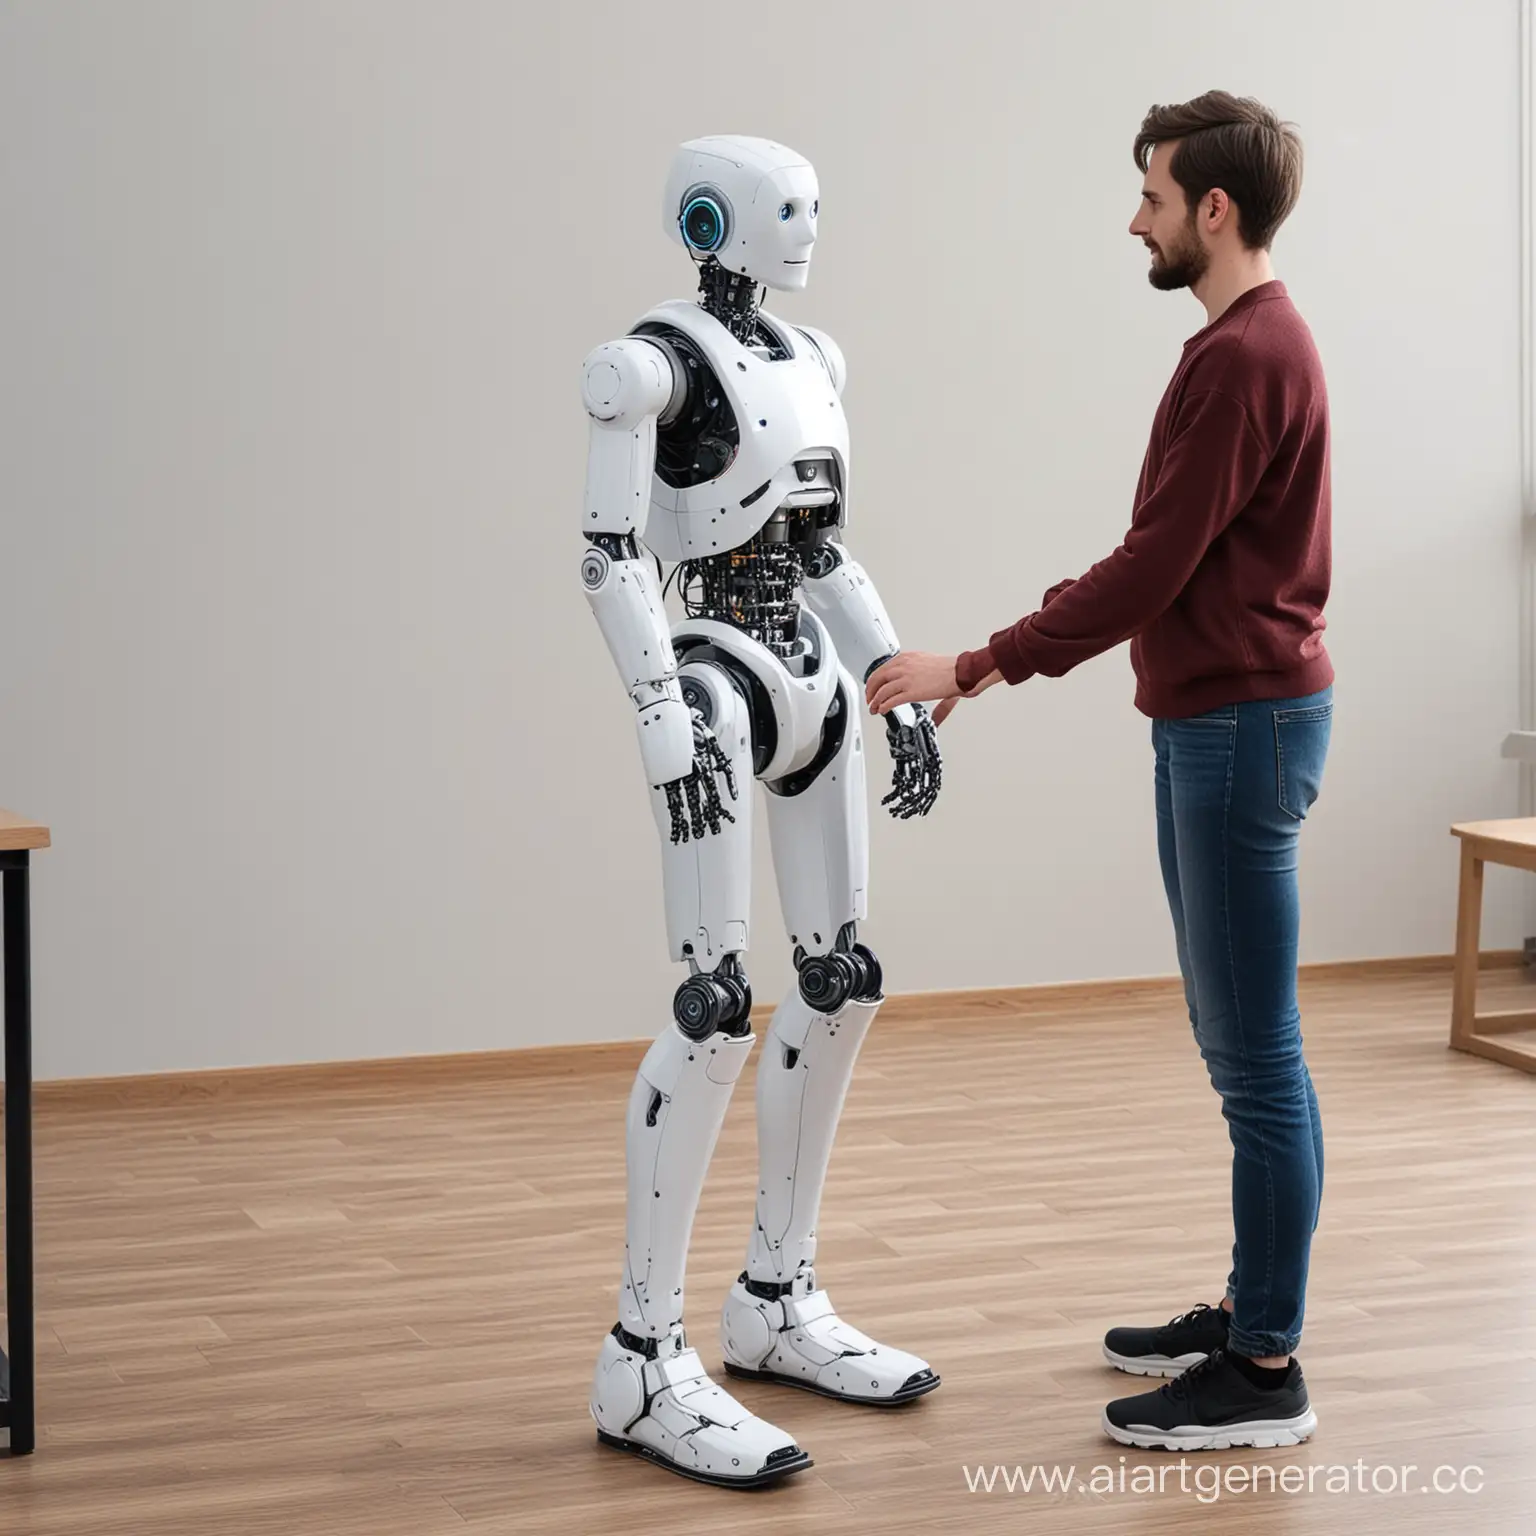 Робот помогает человеку встать на ноги